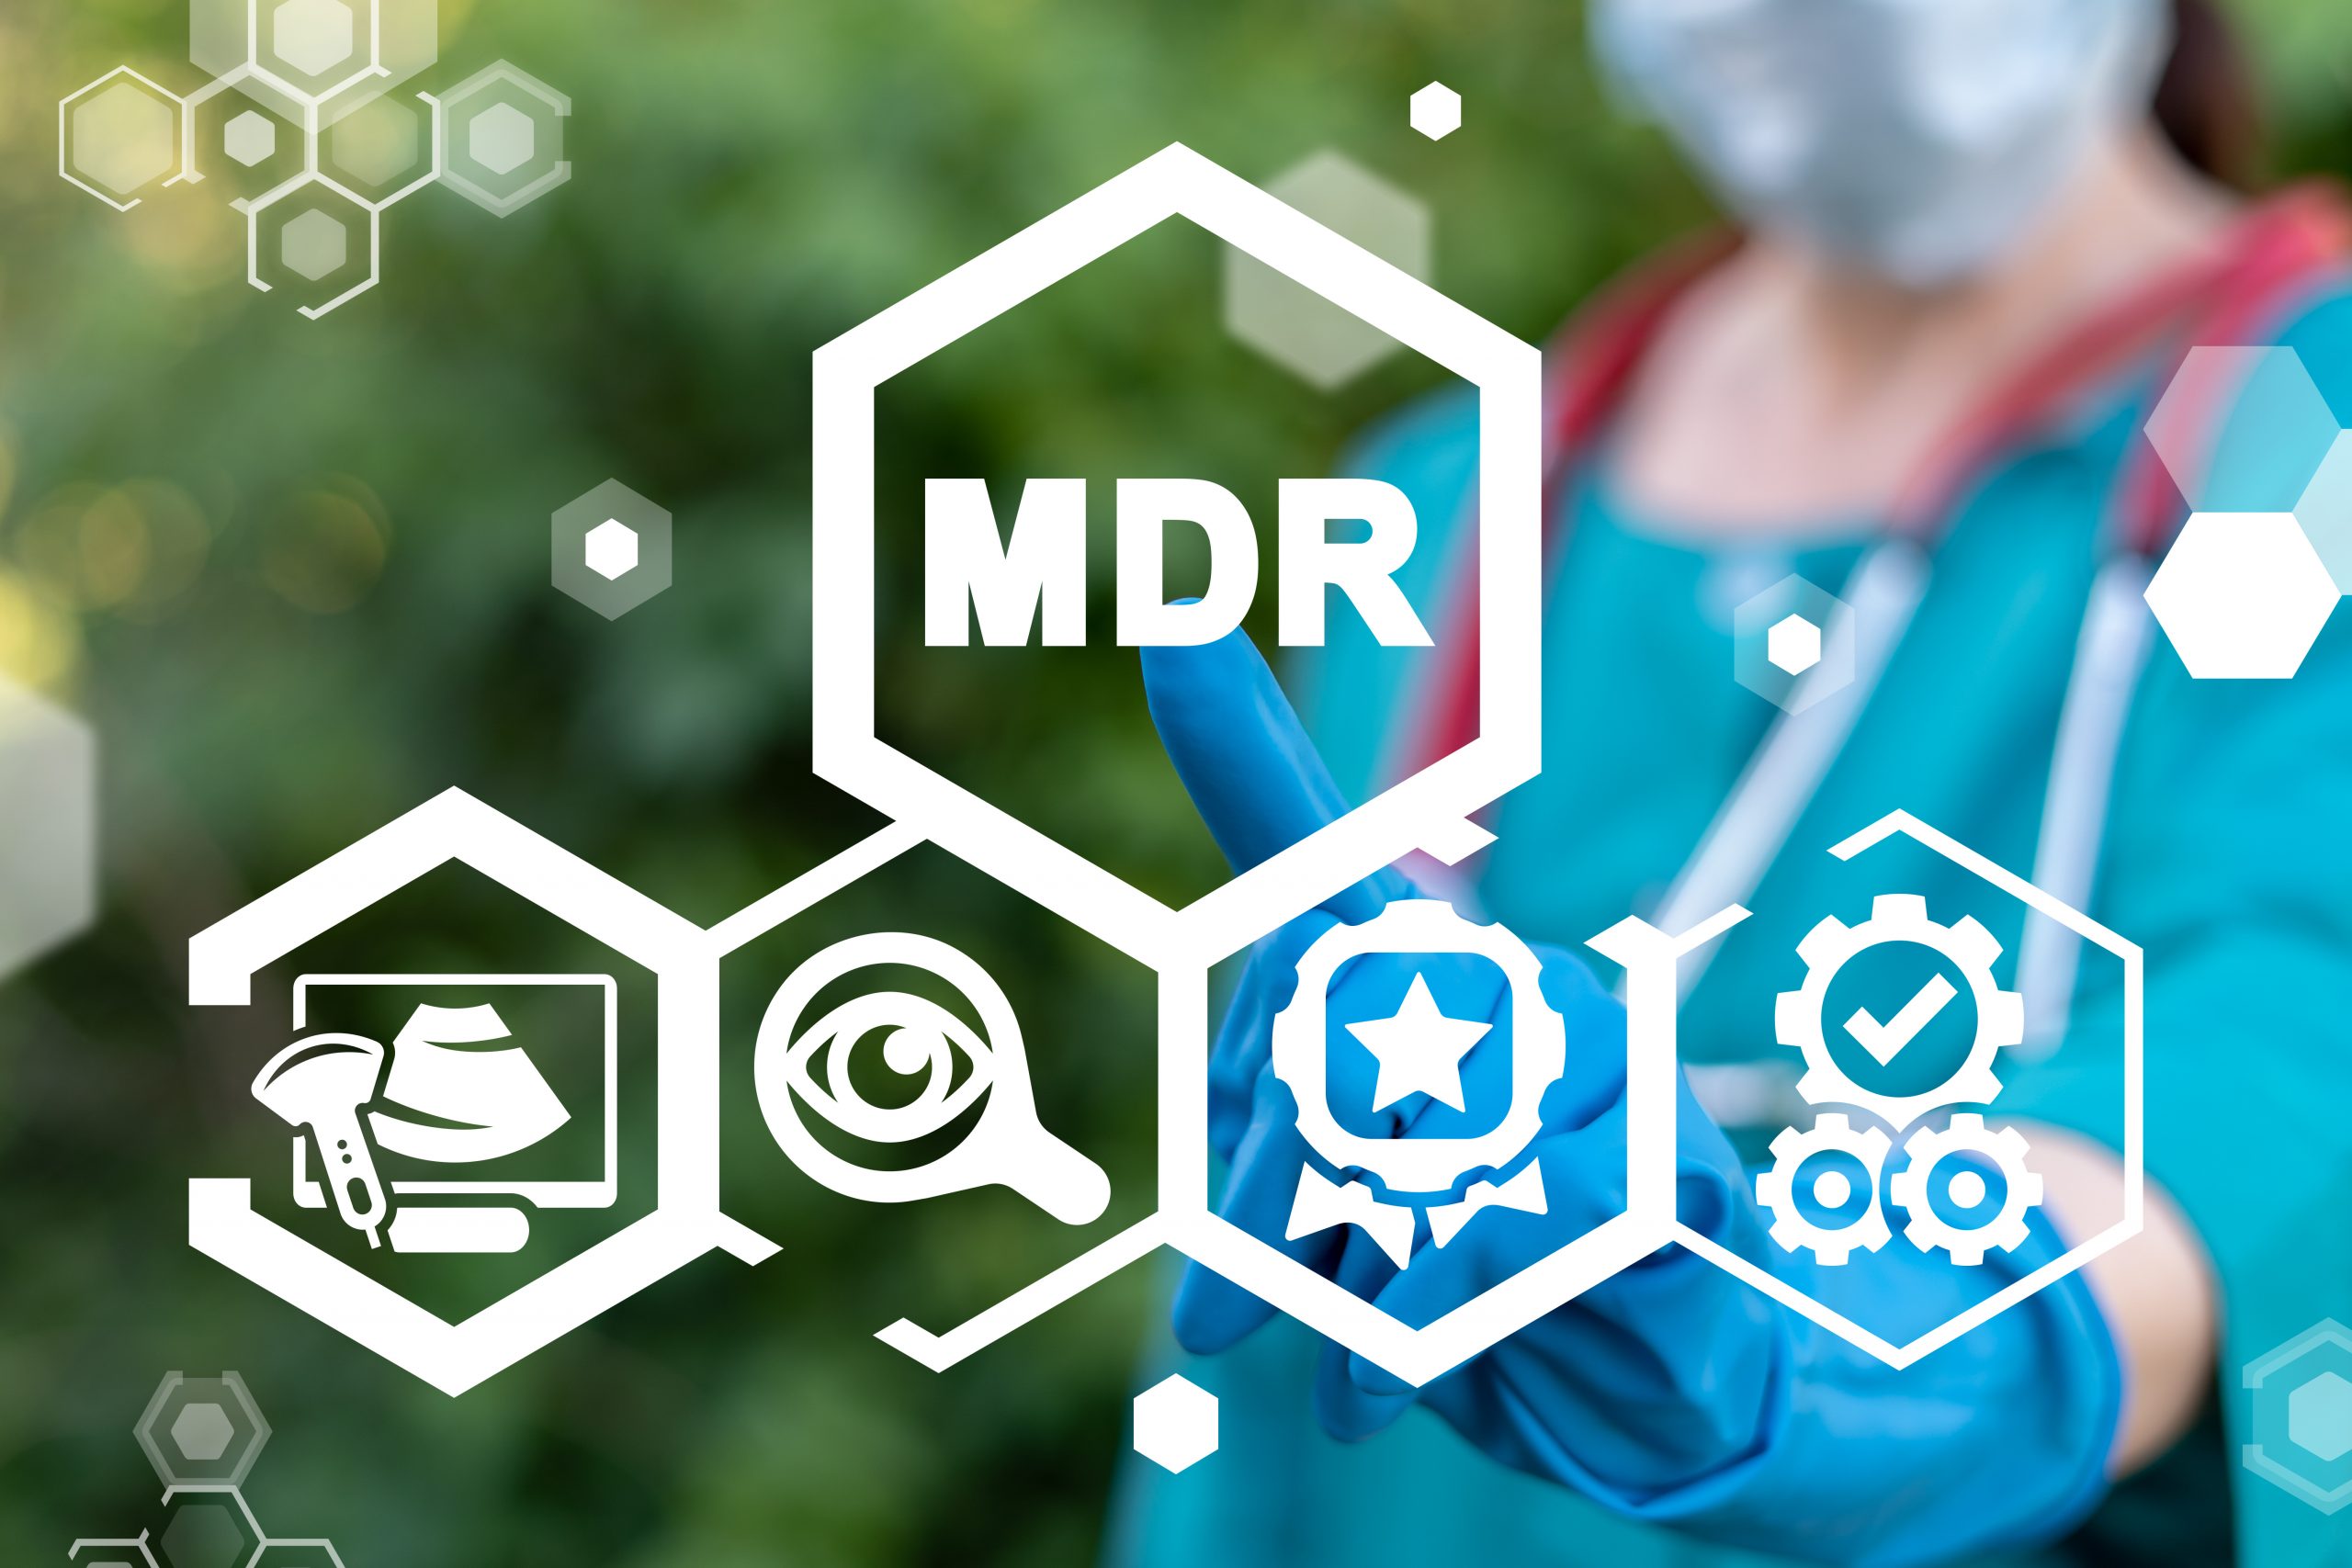 Concept of MDR Medical Device Regulation.